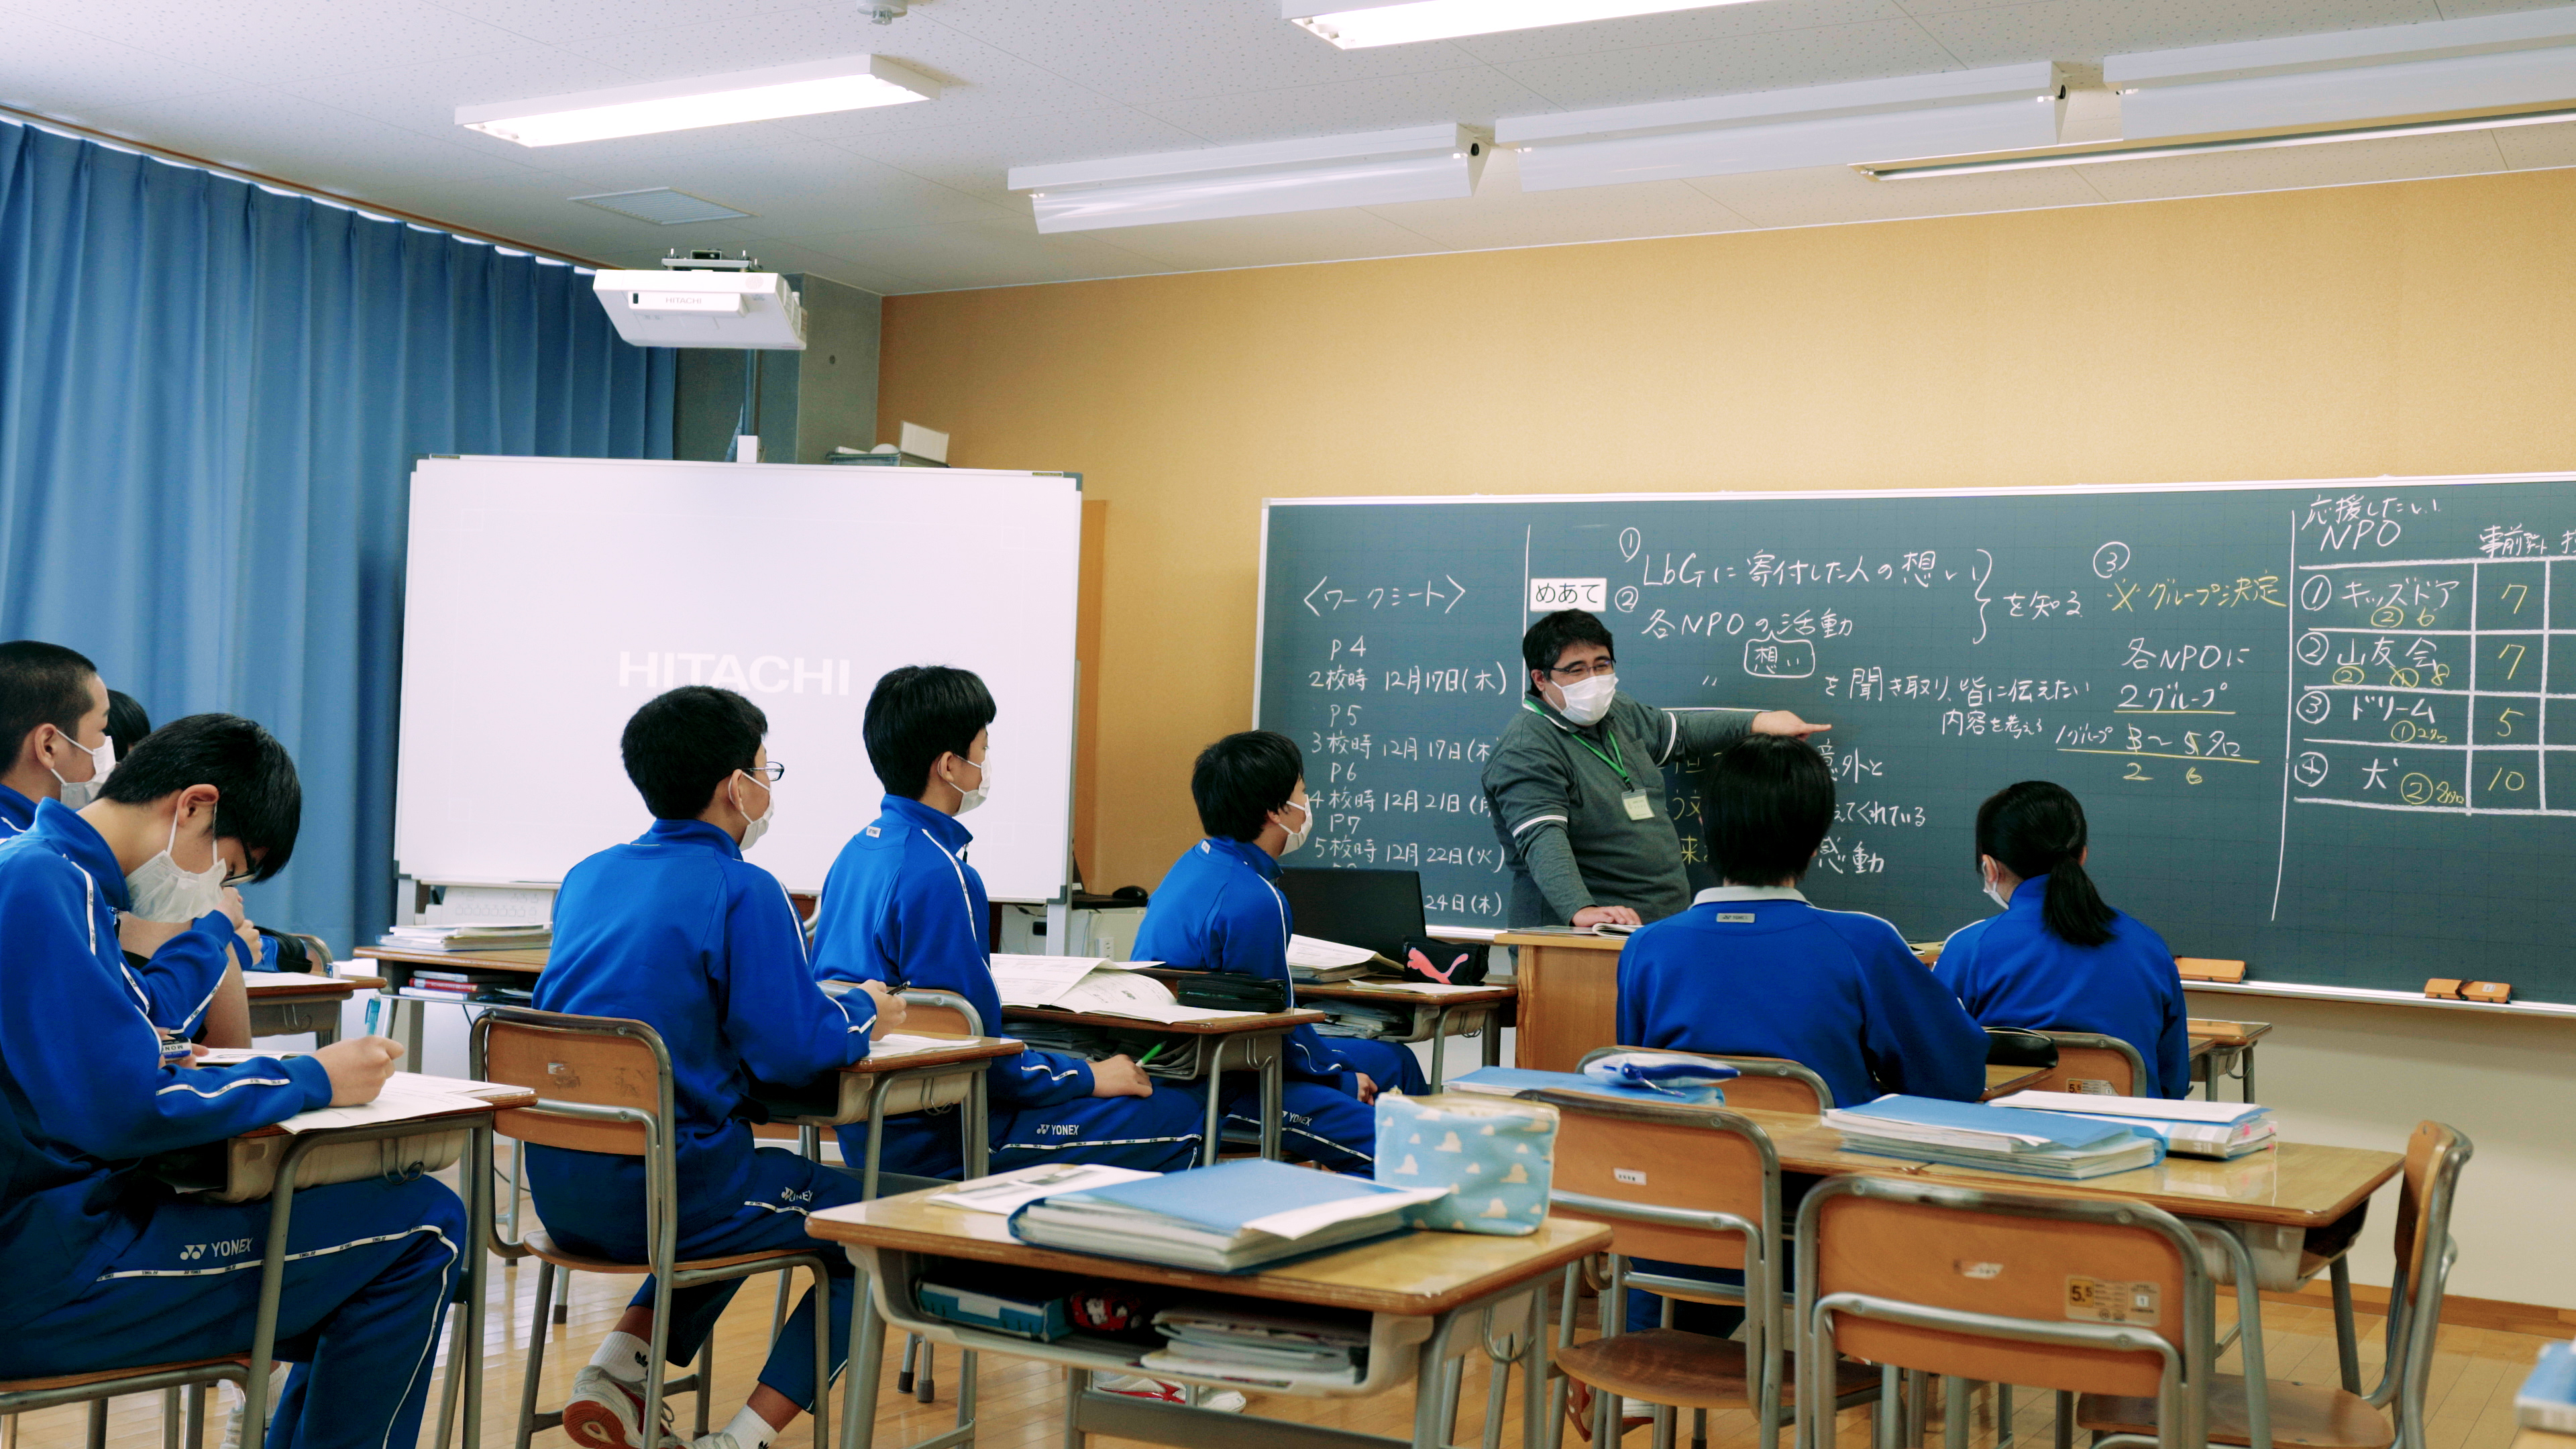 【コラム】板橋第3中学校で見た、生徒たちのまっすぐな眼差し②